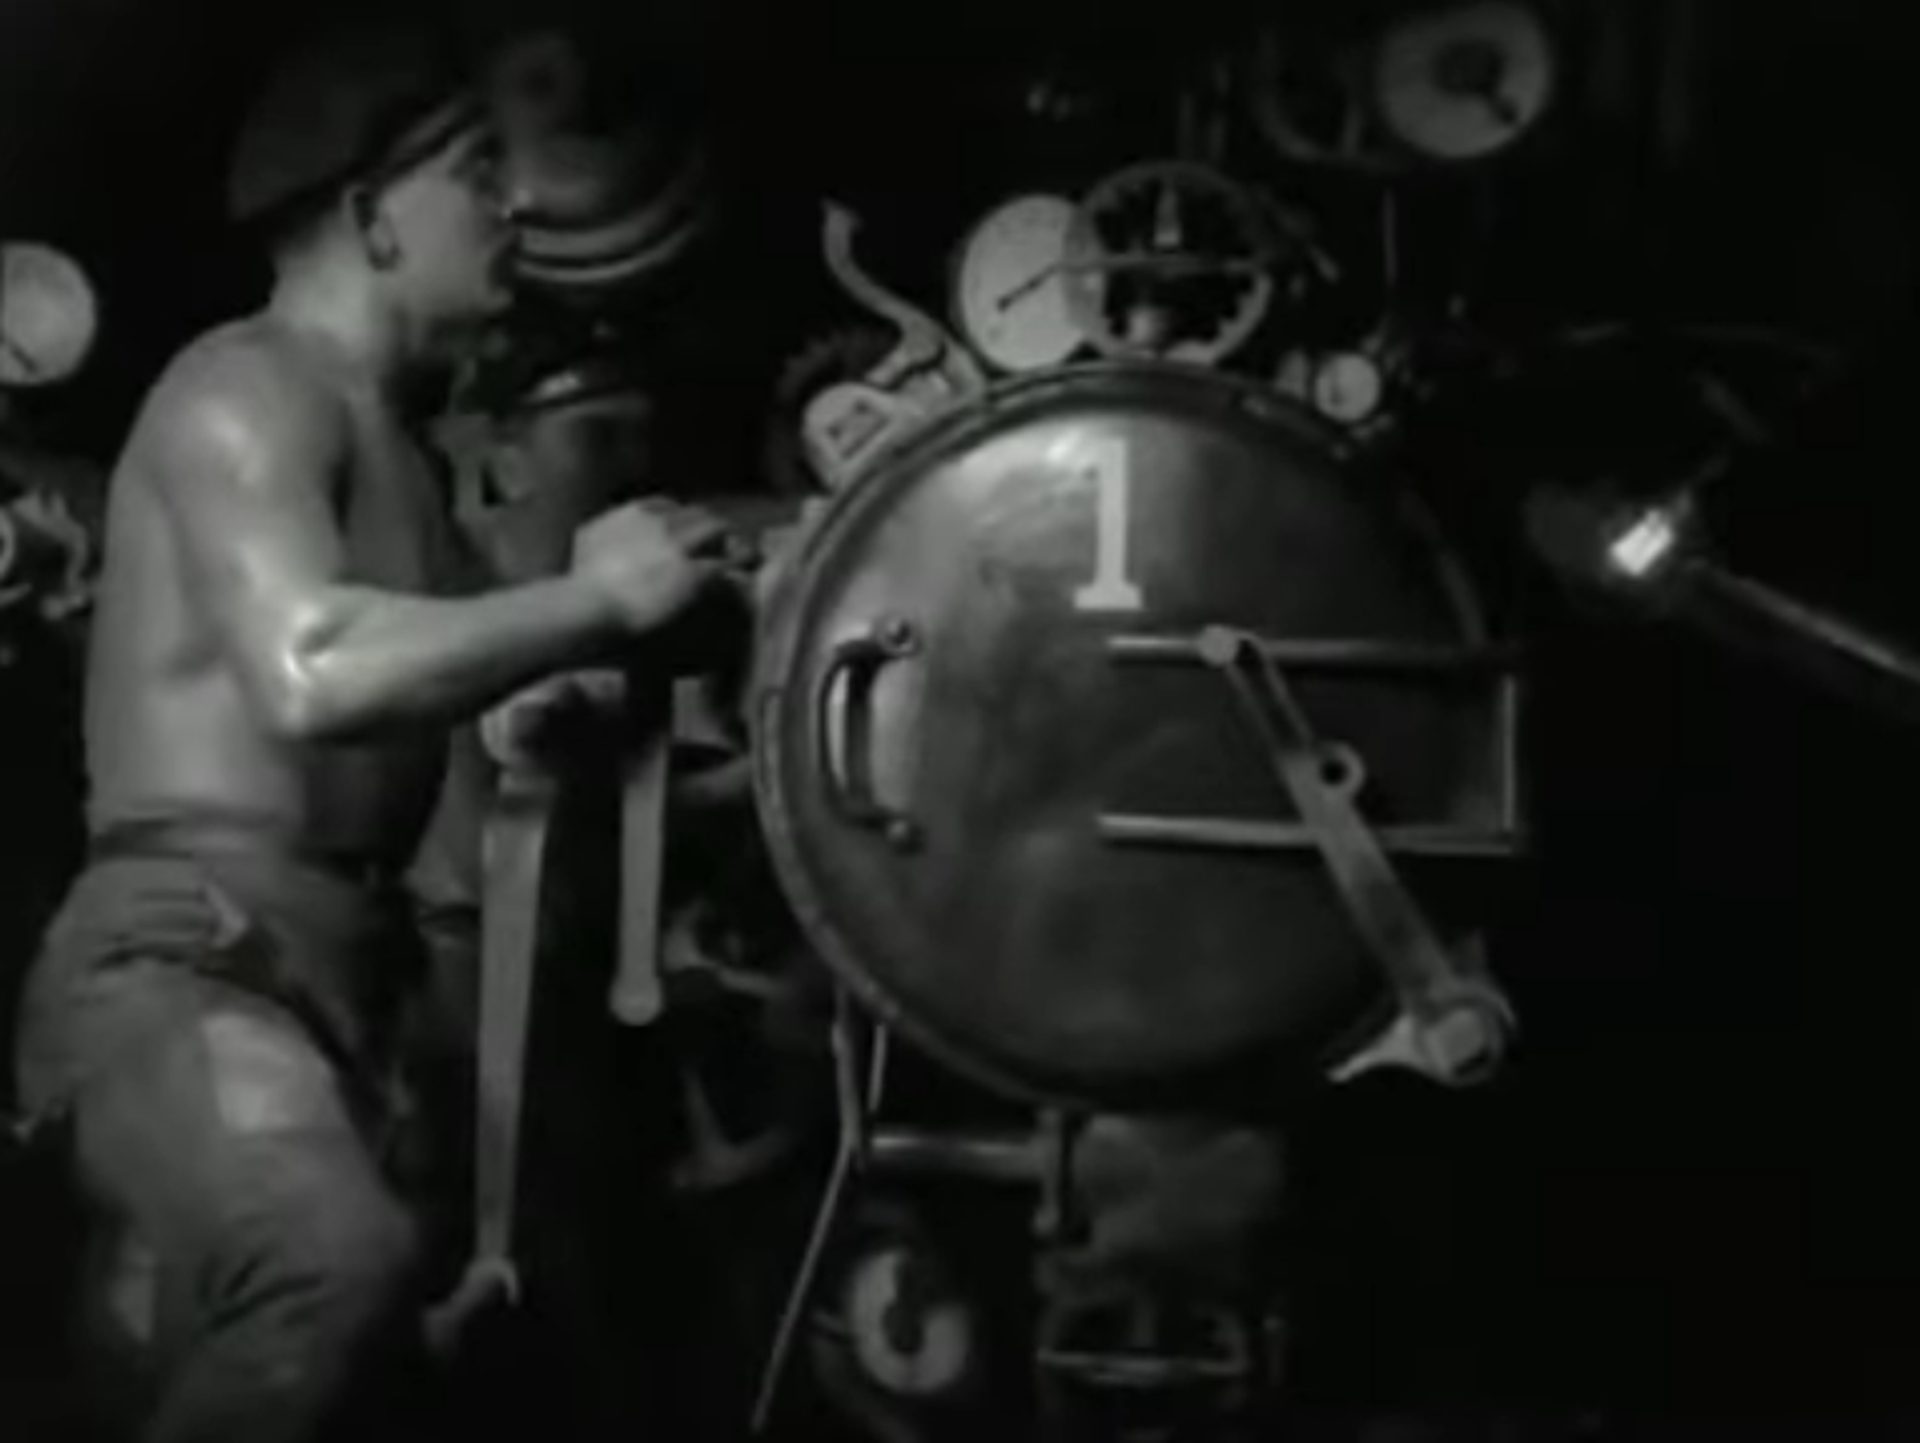 Schwarz-Weiß-Szene: Muskulöser Seemann mit nacktem Oberkörper am Torpedorohr, auf dessen Luke in weißer Serifenschrift eine 1 aufgebracht ist.